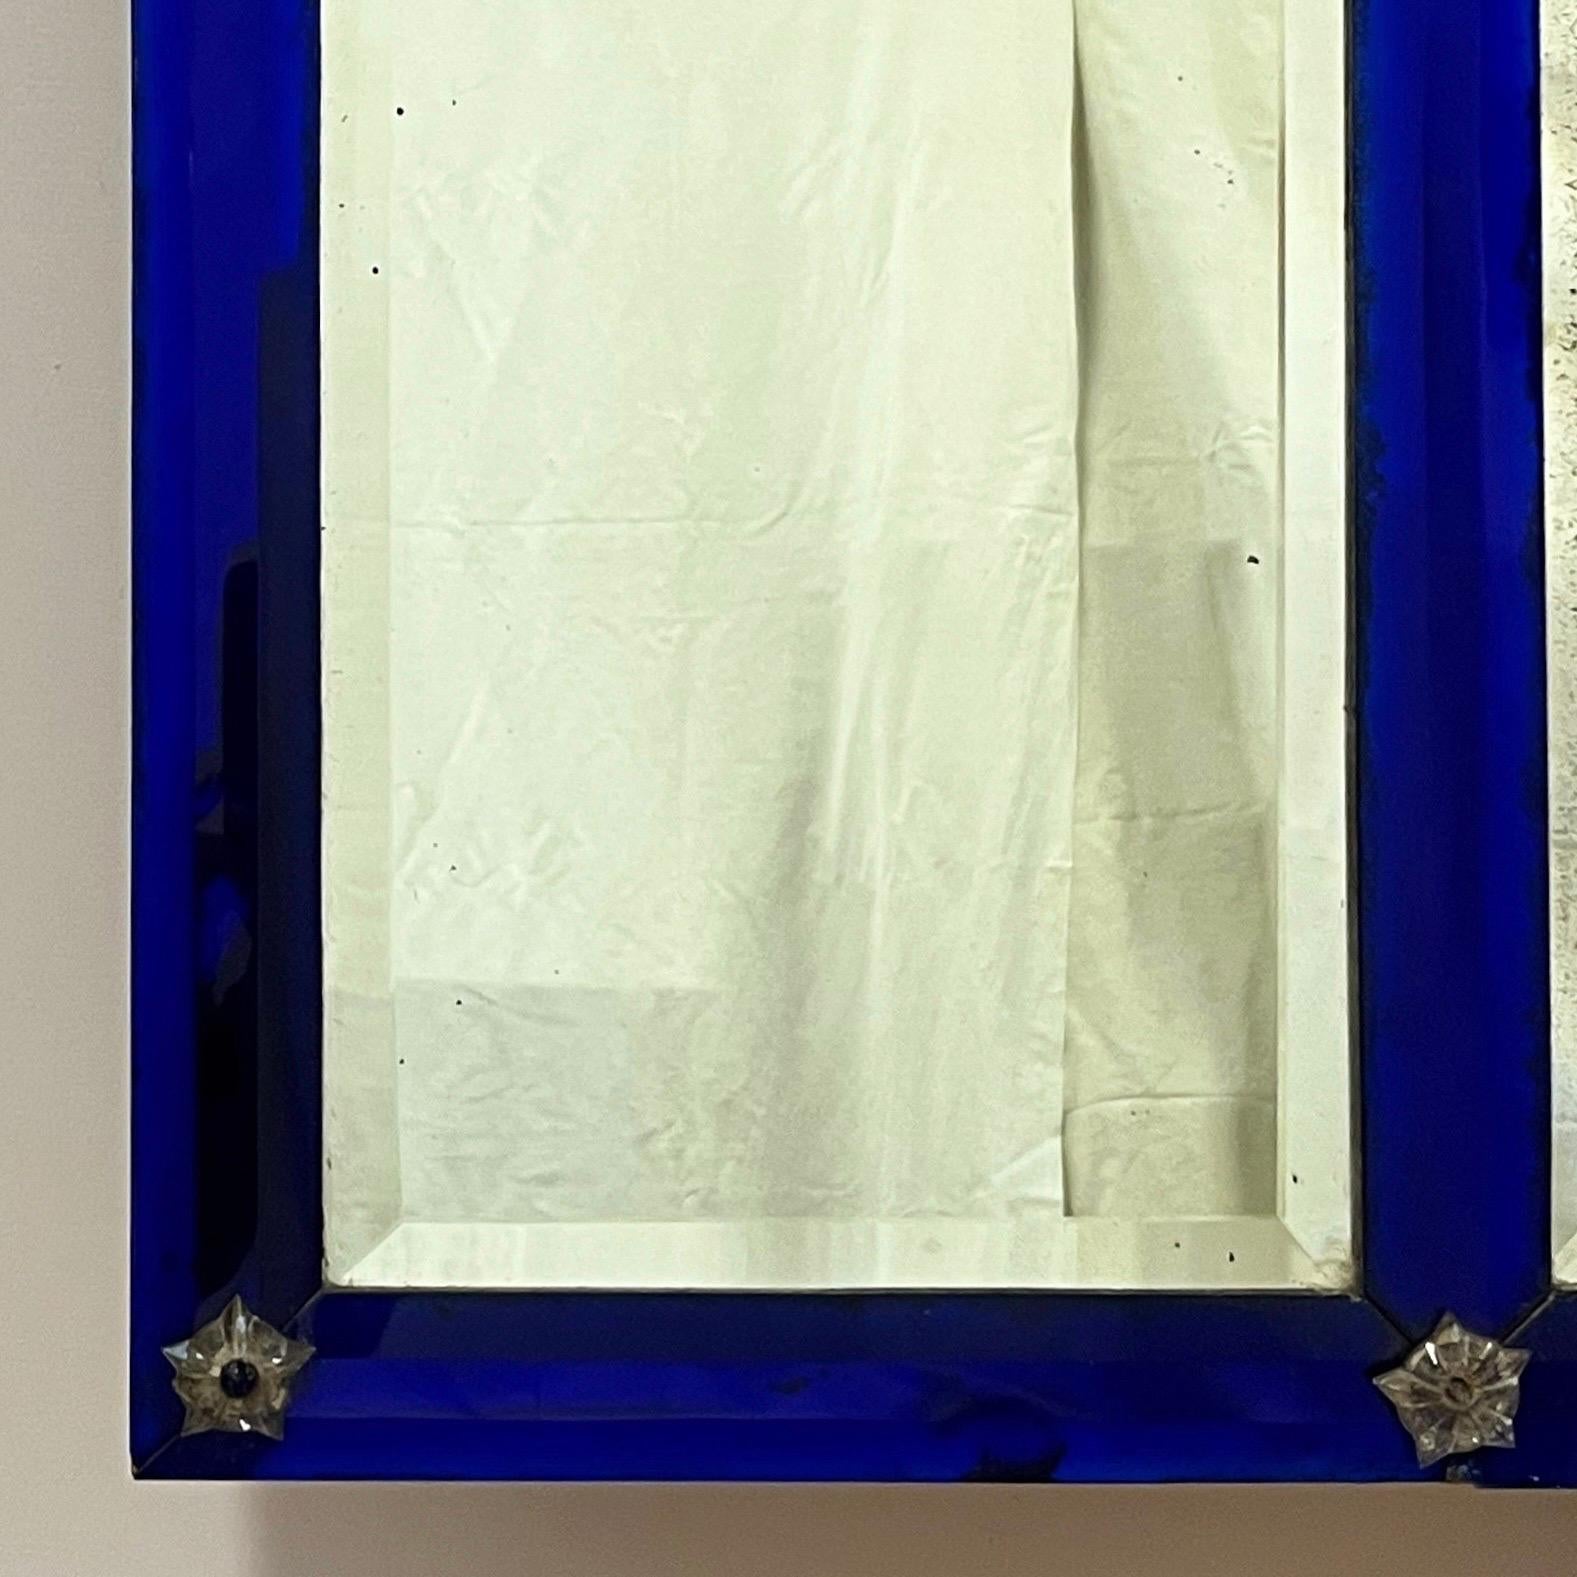 Un très élégant miroir français à trumeau avec une section centrale arquée flanquée de deux plaques rectangulaires et d'une bordure en verre bleu empire, le tout biseauté - entrecoupé de paterae étoilées en verre.

Début du vingtième siècle